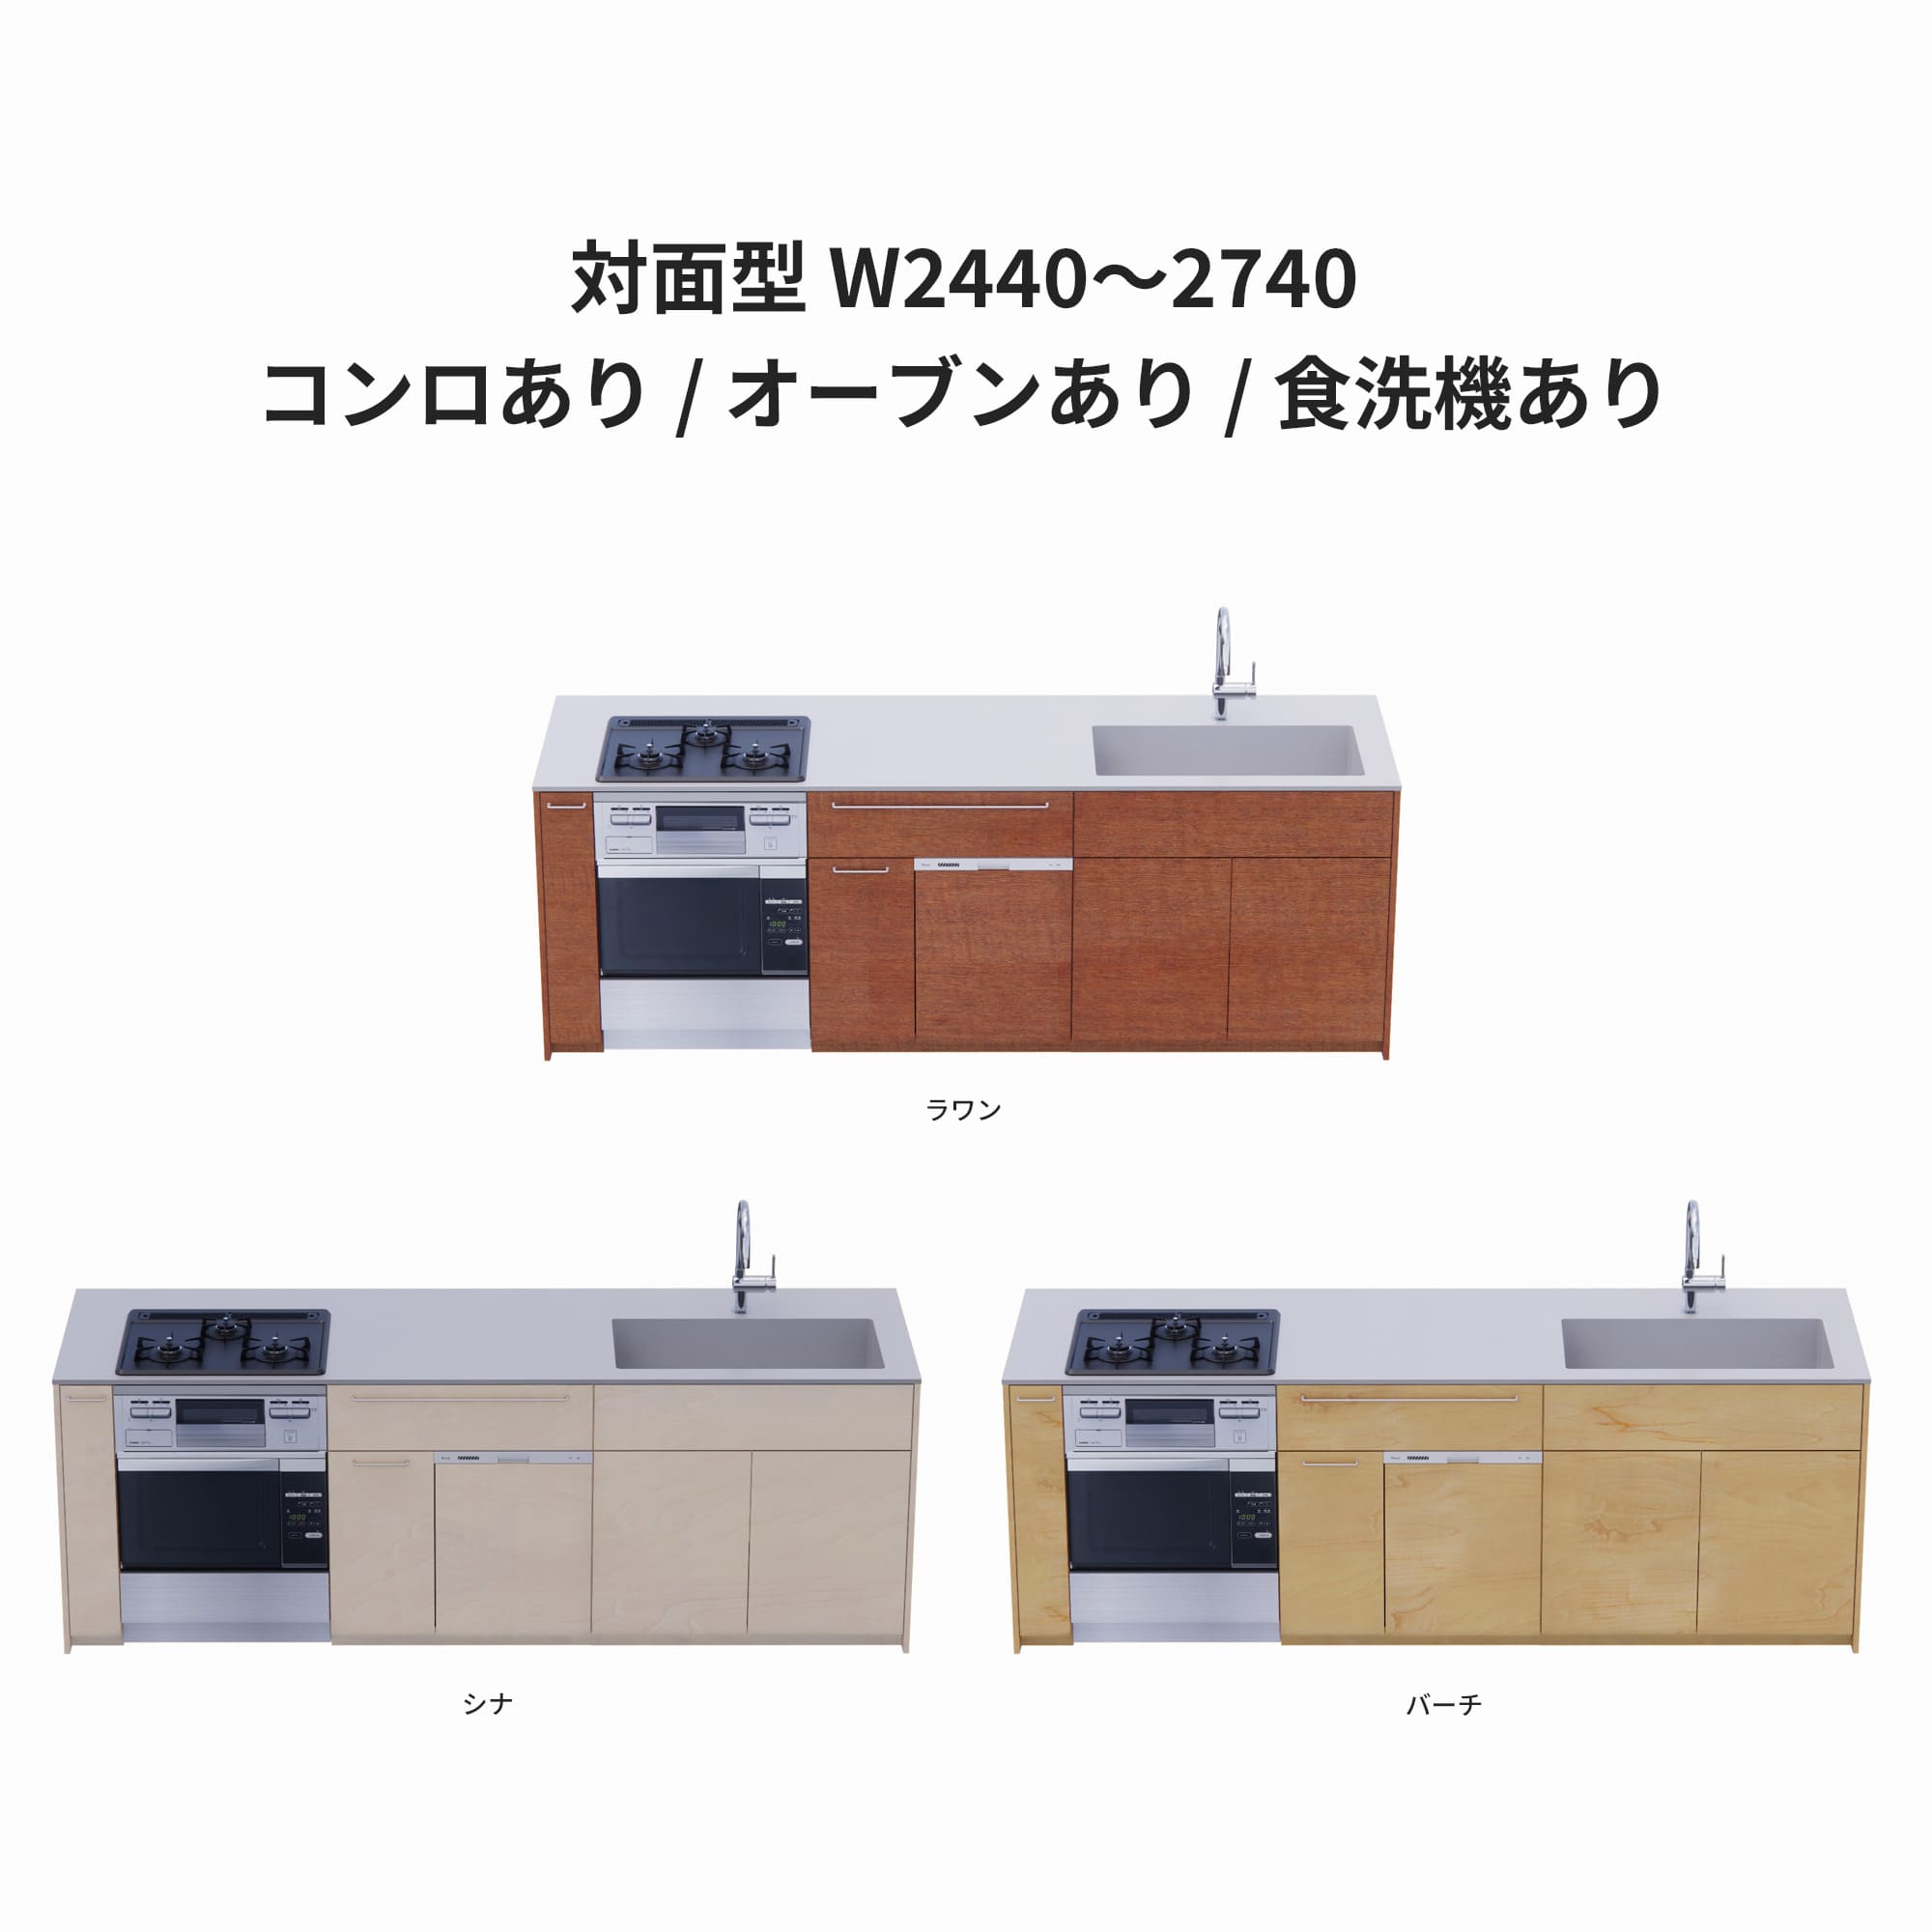 木製システムキッチン 対面型 W2440～2740・コンロあり / オーブンあり / 食洗機あり KB-KC022-46-G183 ラワン・シナ・バーチが選択できます